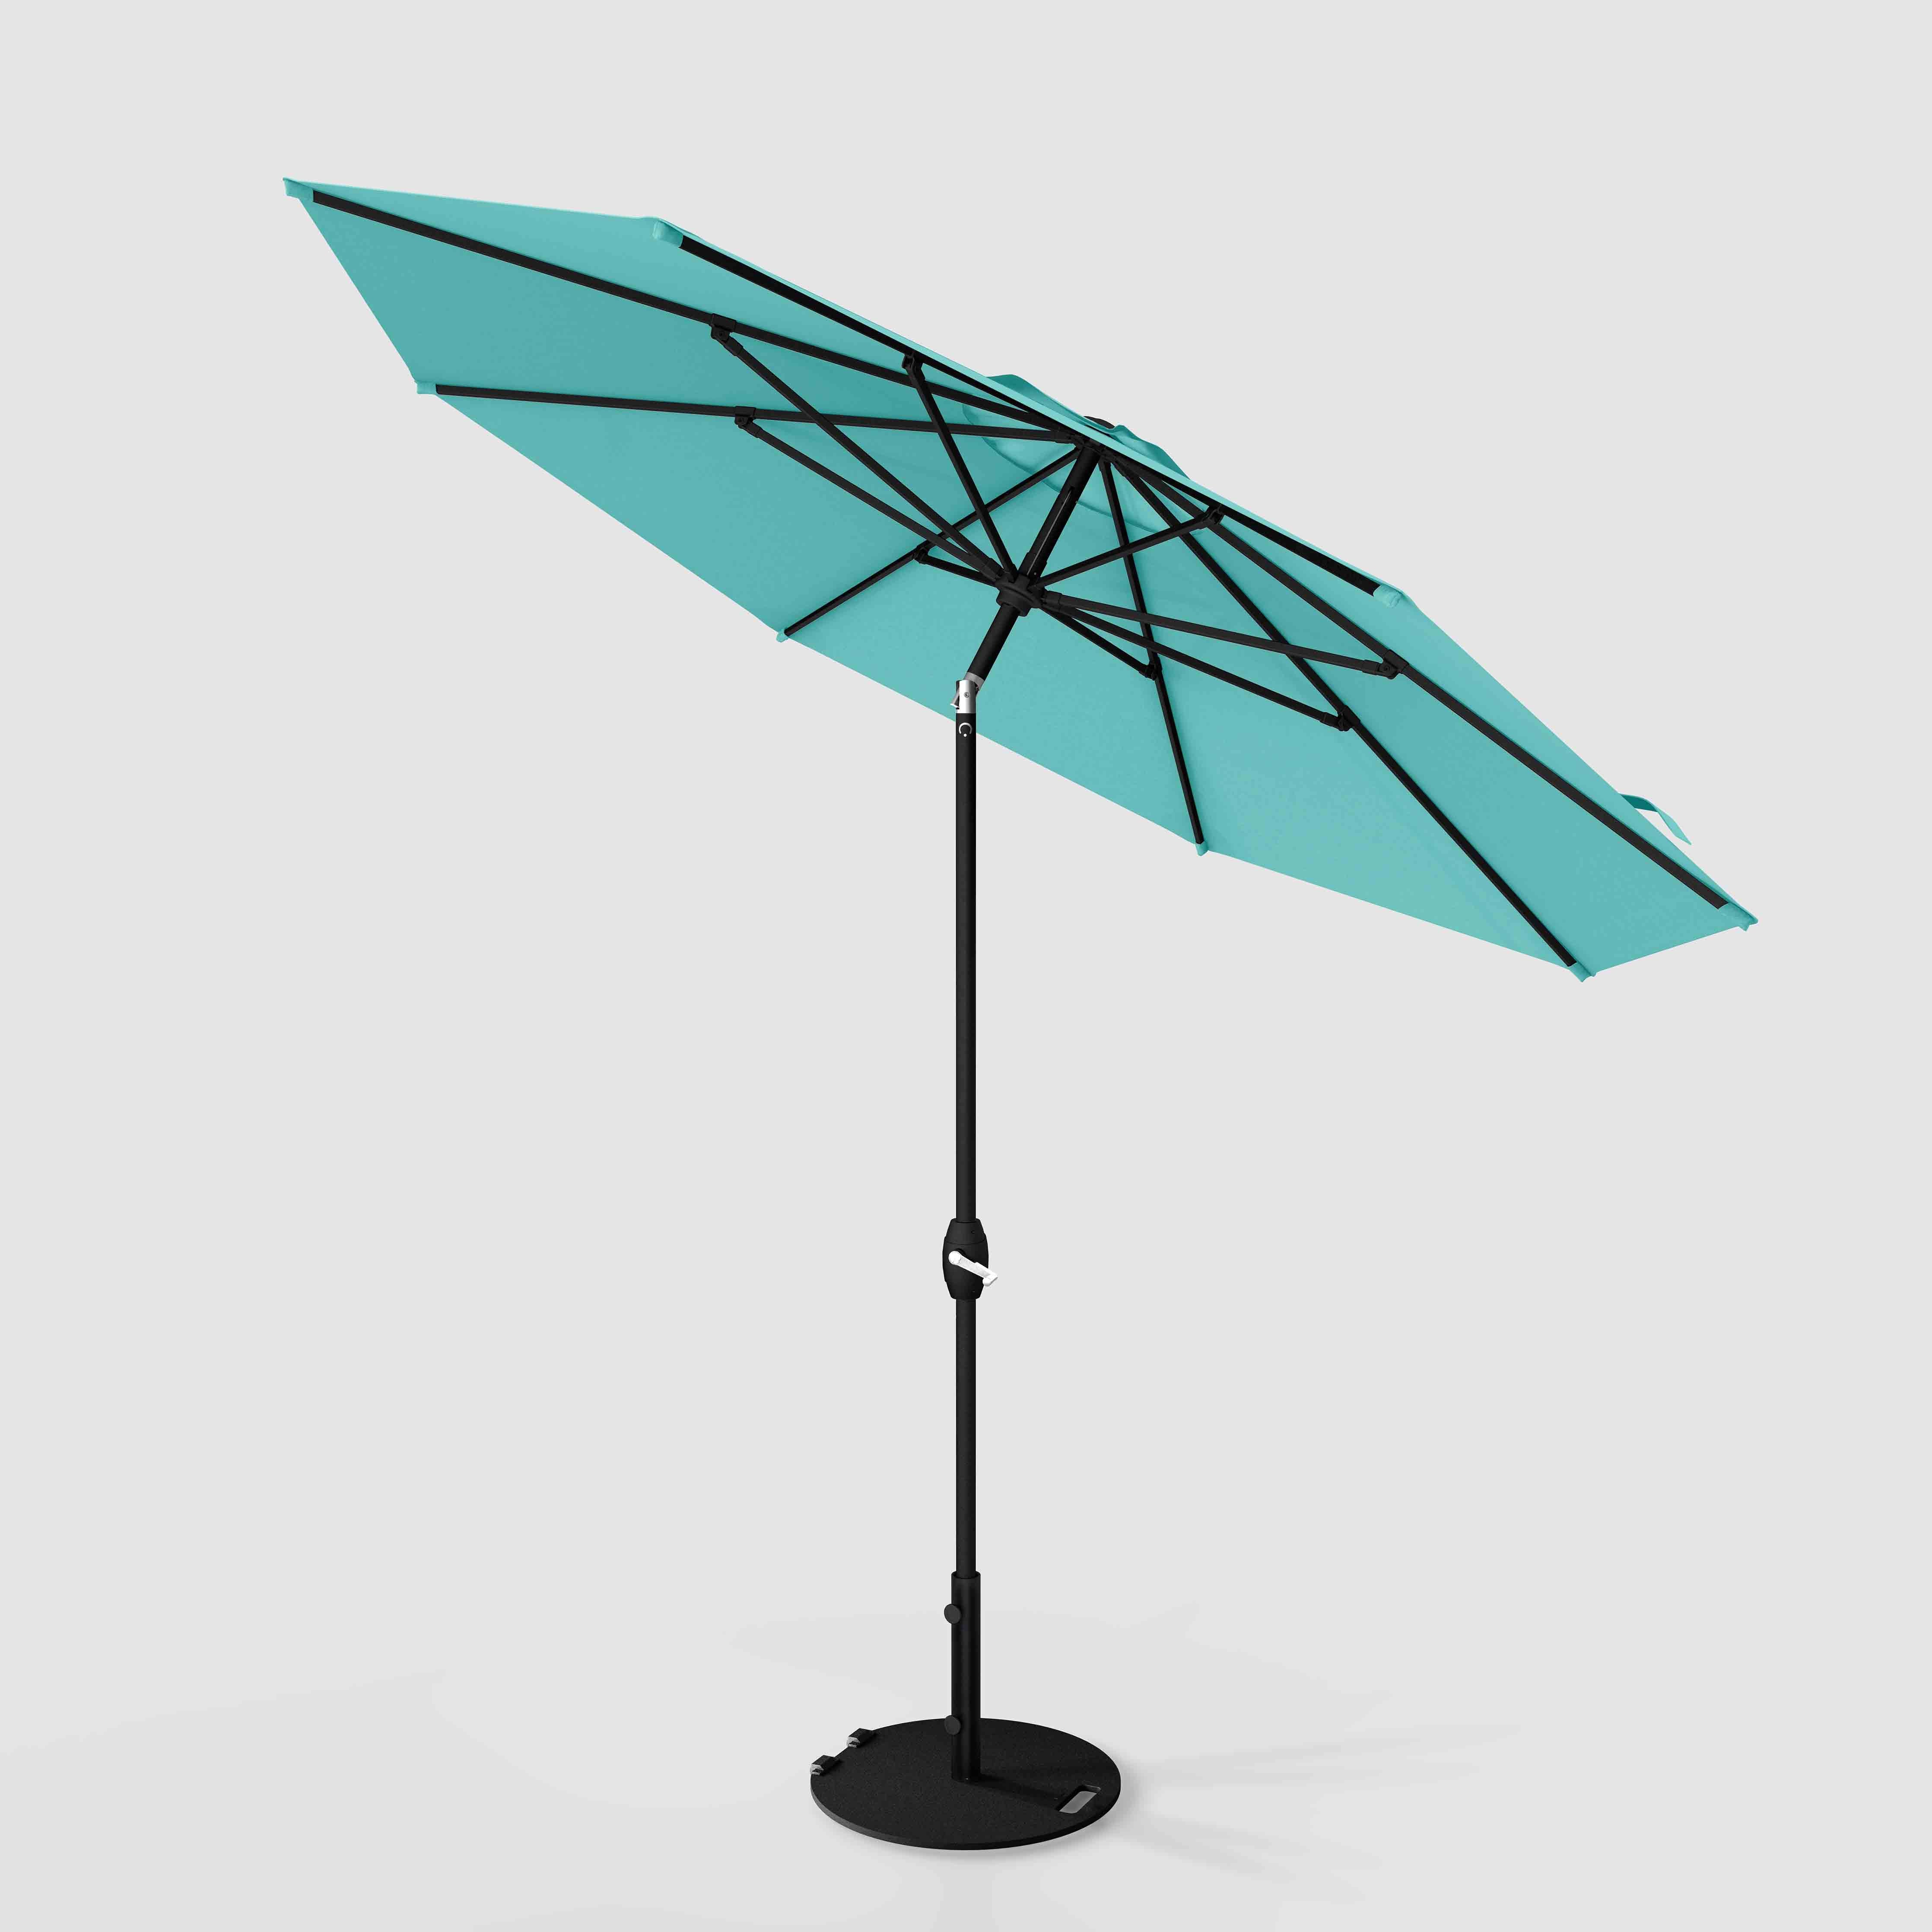 The Lean™ - Sunbrella Aruba